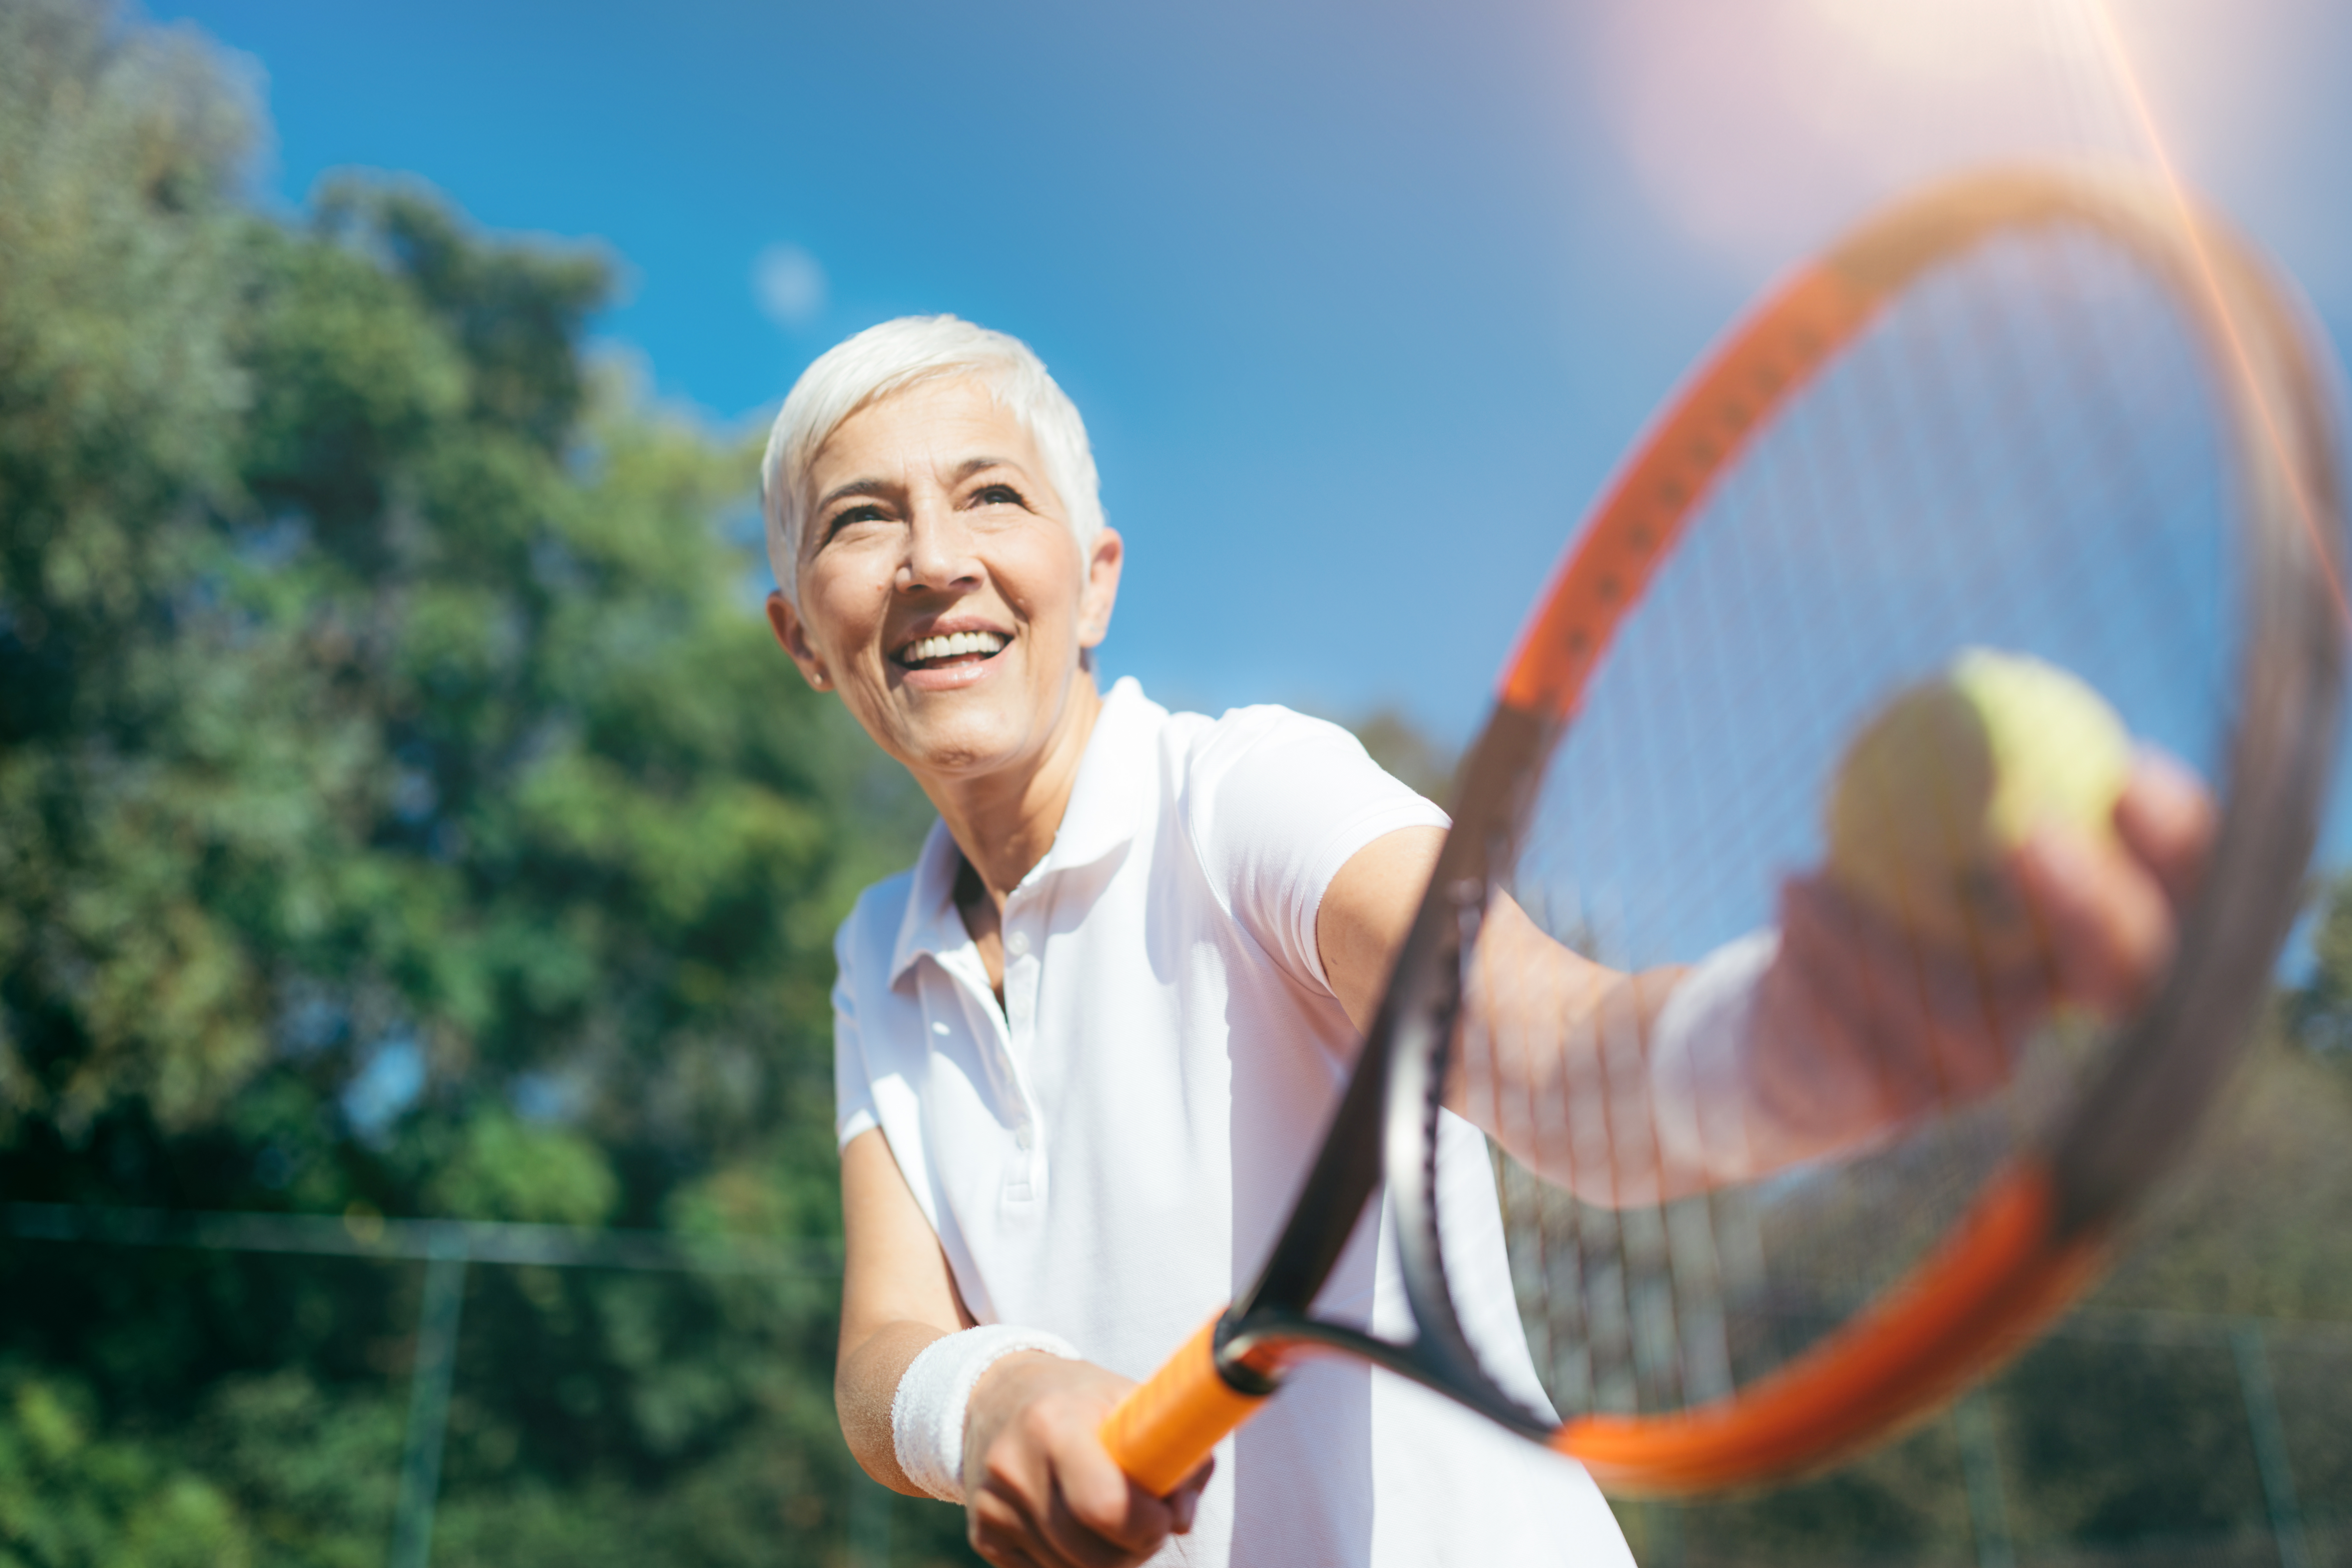 Woman-Tennis-Serve